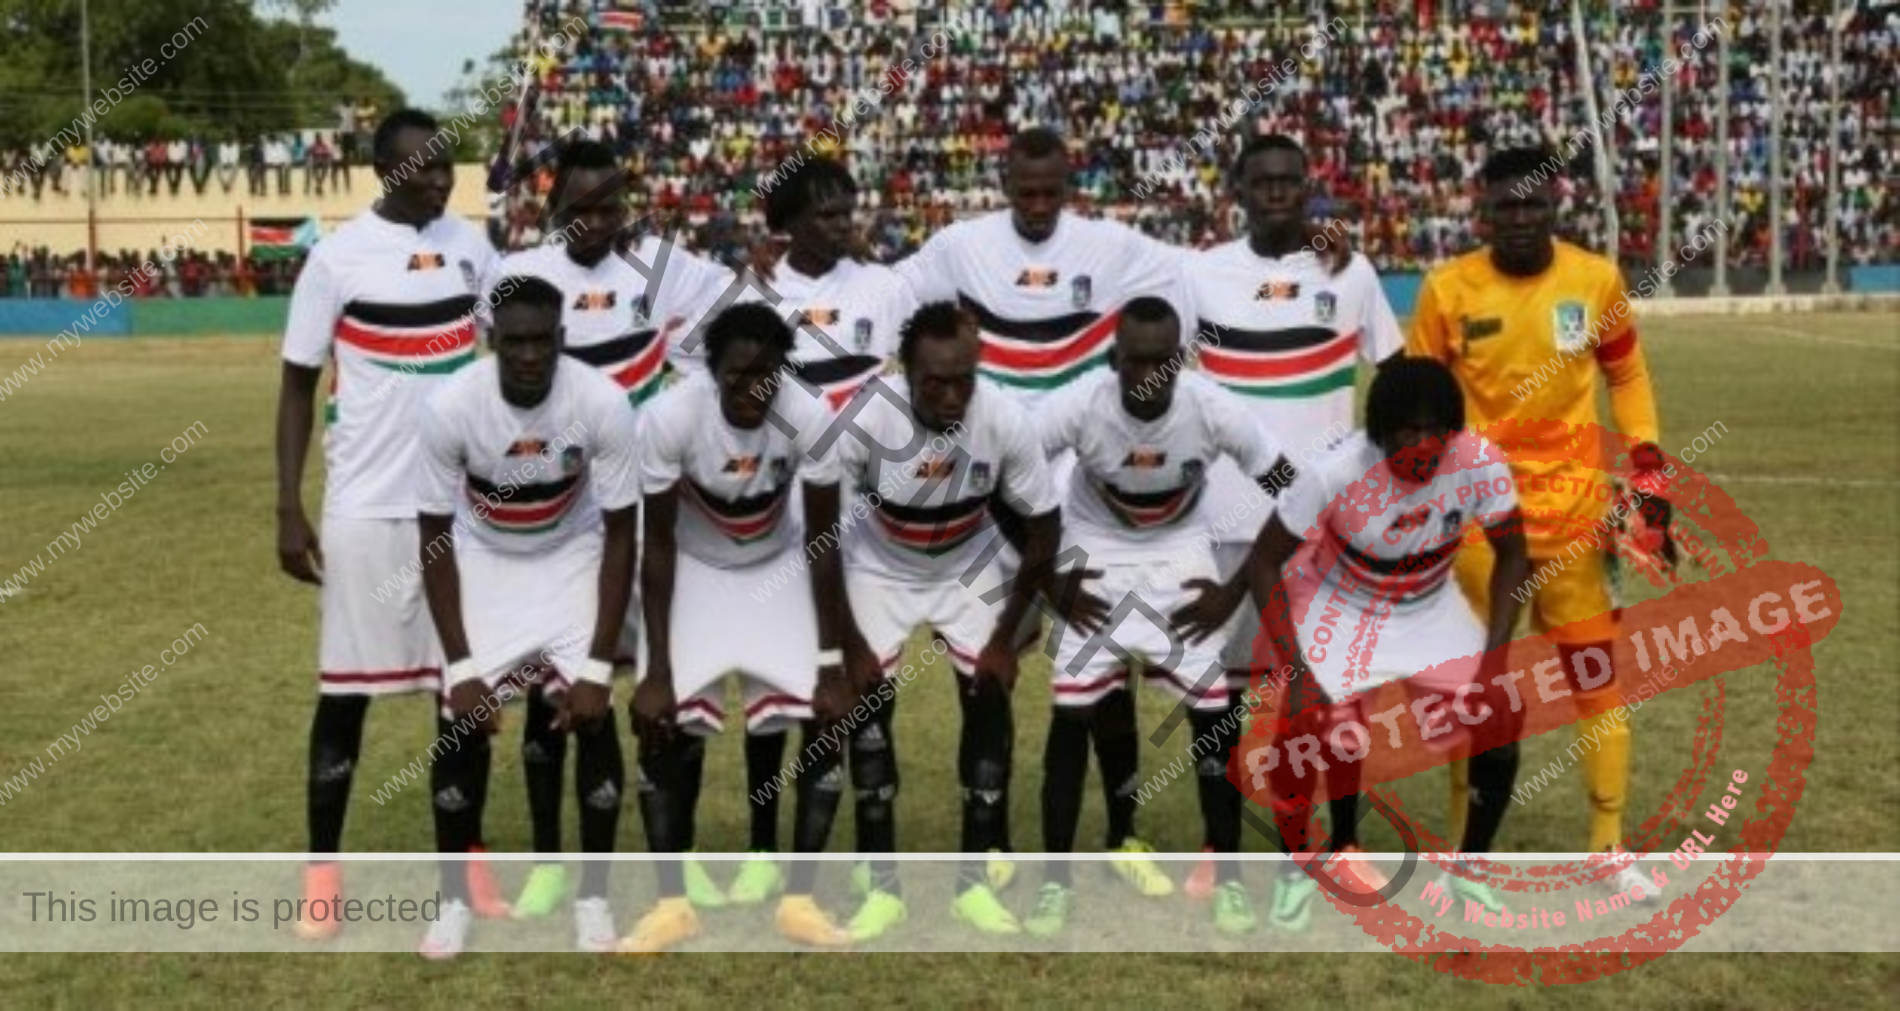 السودان ينتزع بطاقة التاهل لأمم افريقيا بفوزه علي جنوب أفريقيا